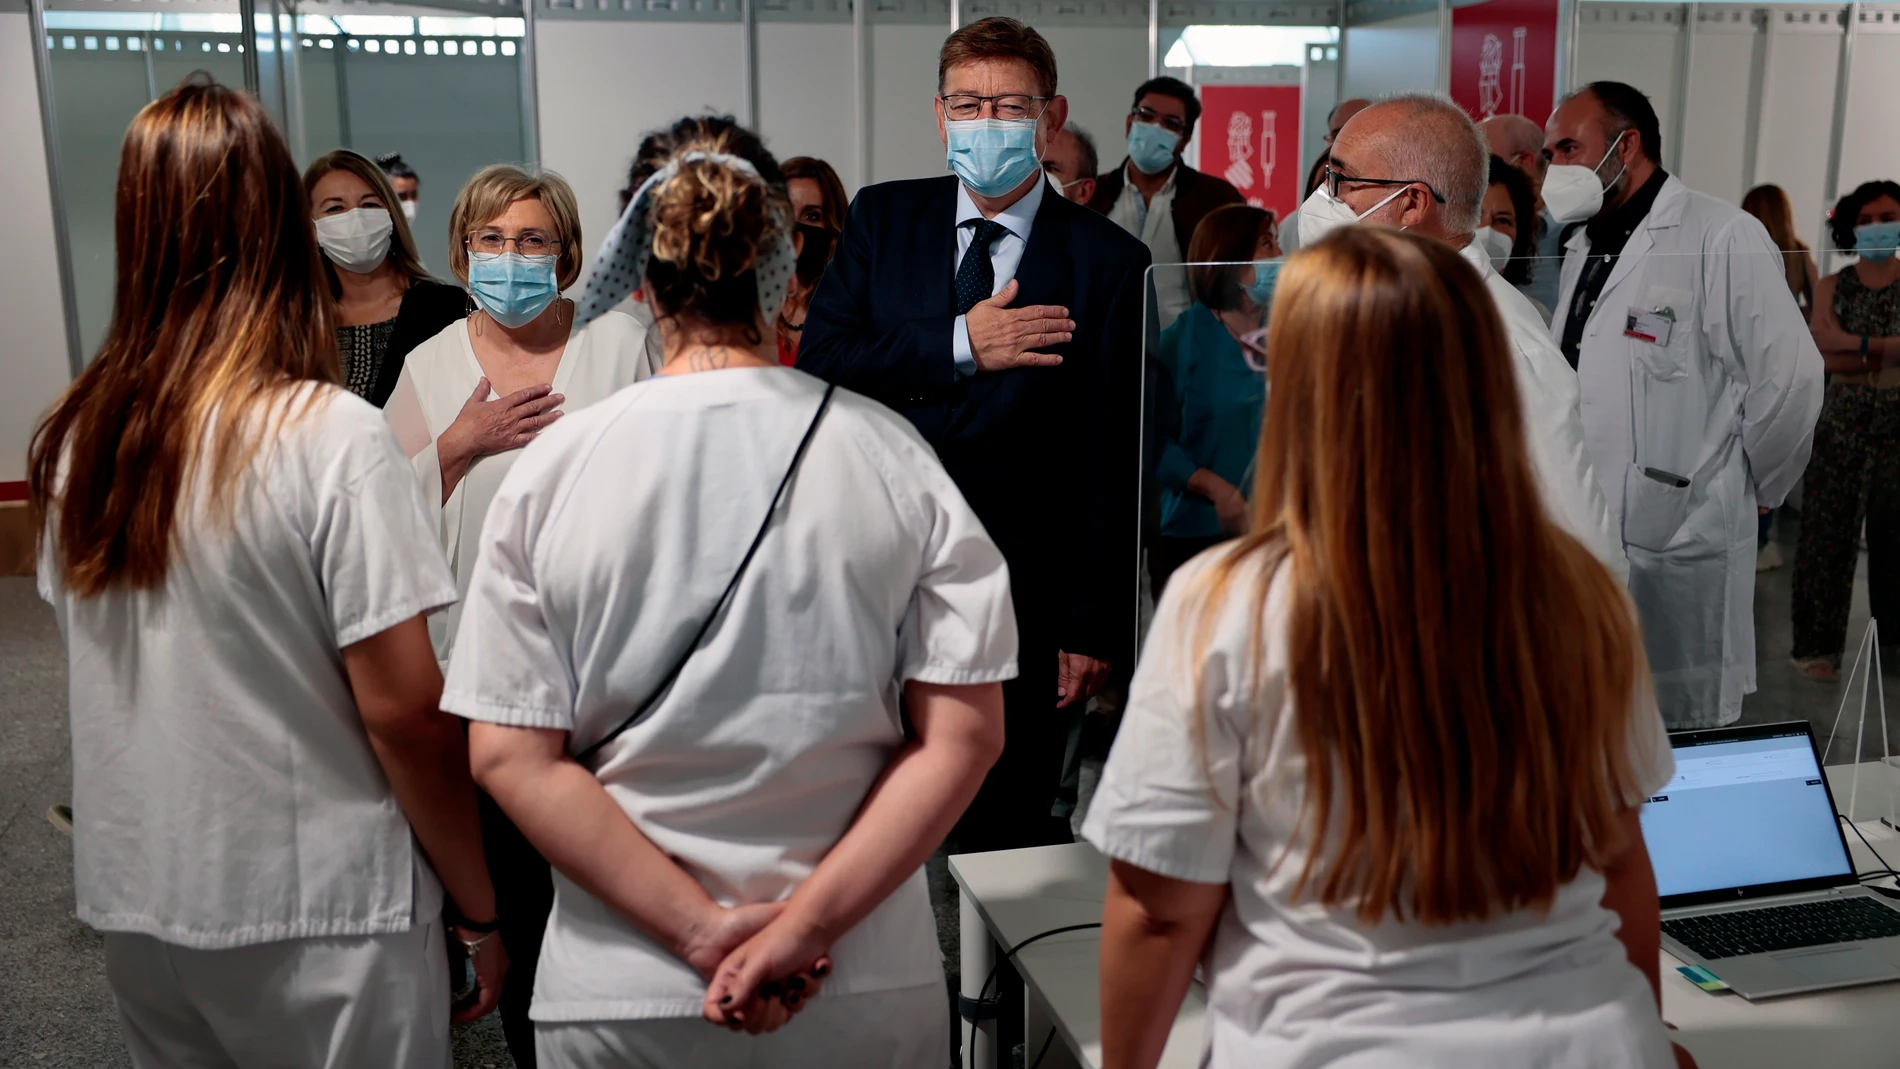 El president de la Generalitat, Ximo Puig, en la imagen, junto a la consellera de Sanidad, Ana Barceló, asiste a la clausura de los puntos de vacunación masiva contra la covid-19 en la Comunitat Valenciana